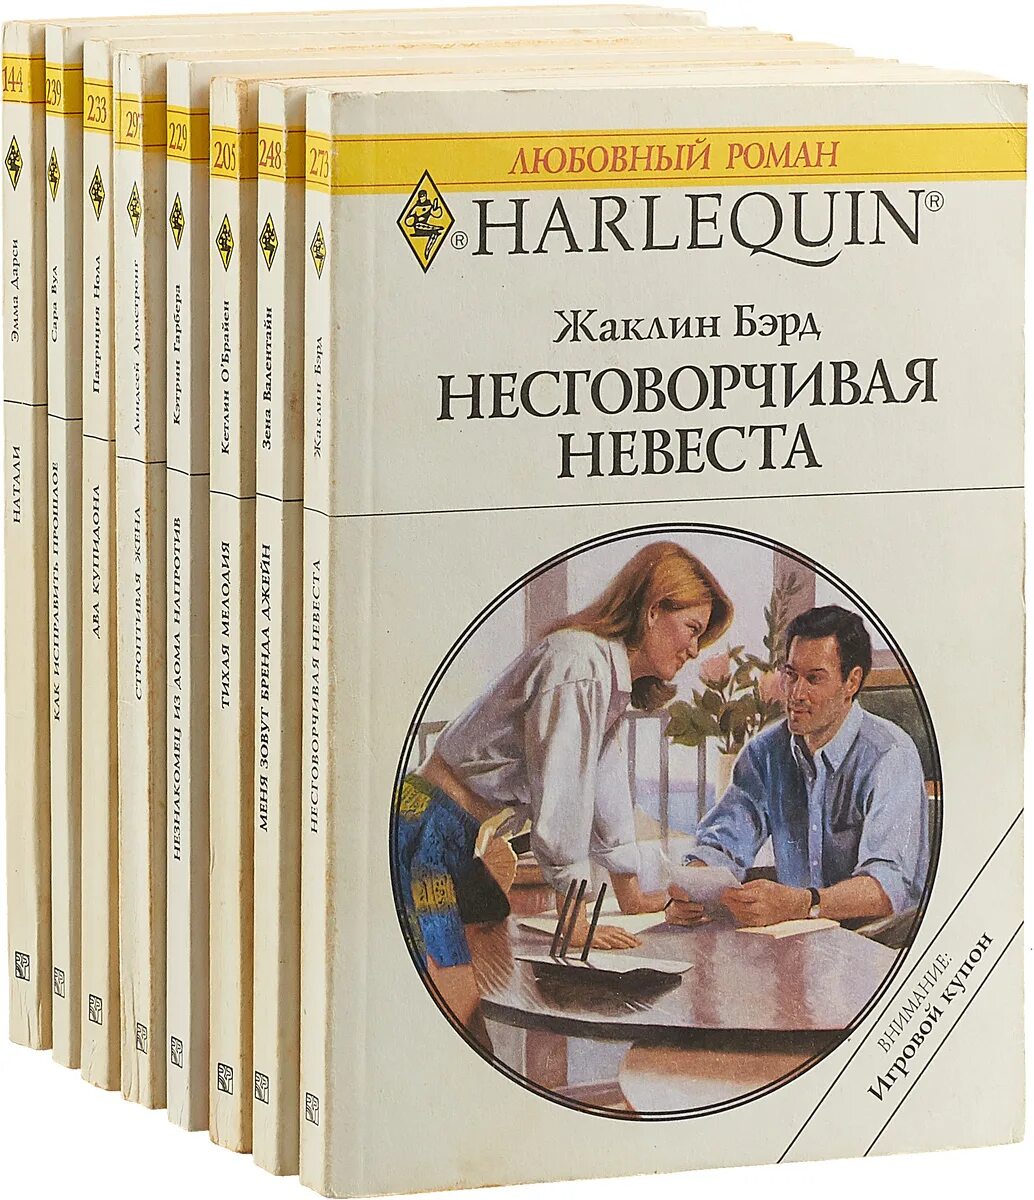 Любовные романы Арлекин 1992-1993. Harlequin любовные романы. Harlequin книги. Список любовных книг